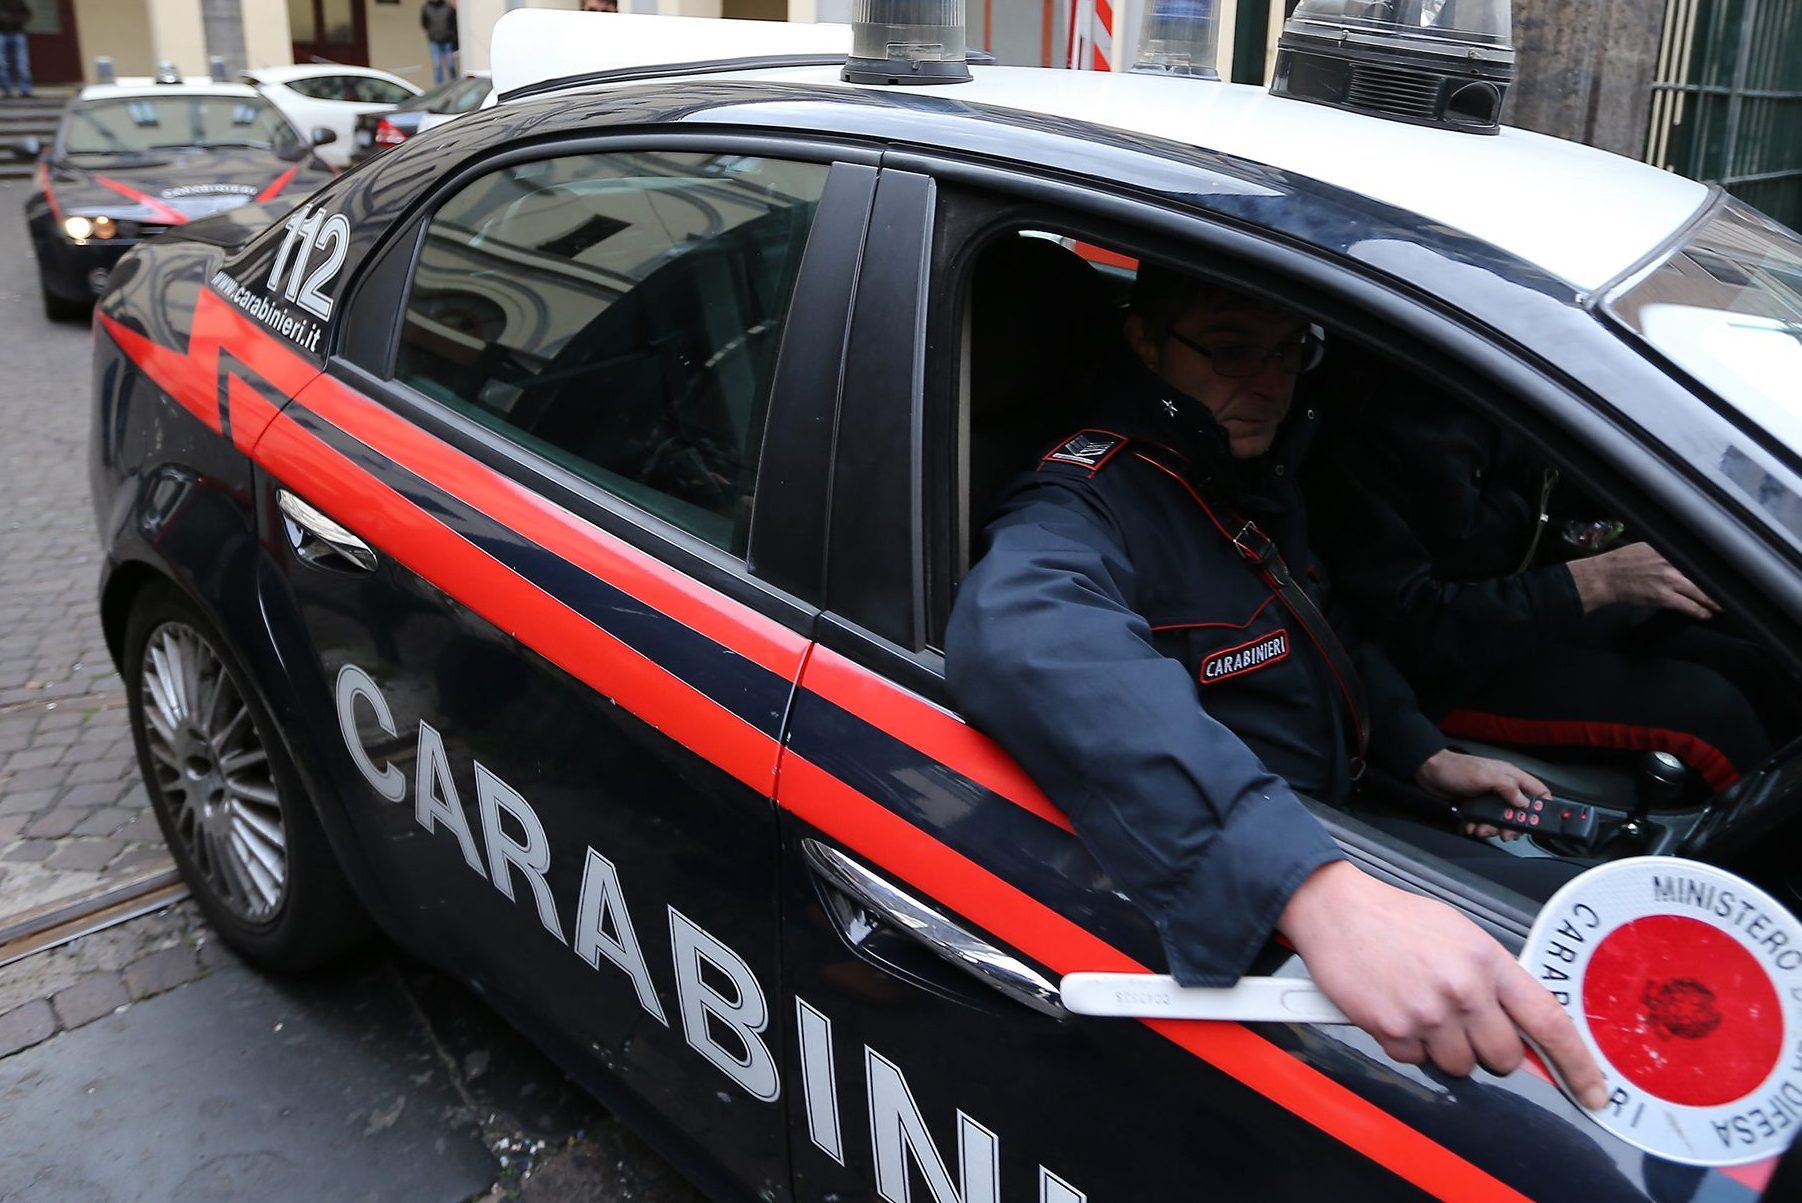 Progettava una strage in Germania: arrestato dai Carabinieri.